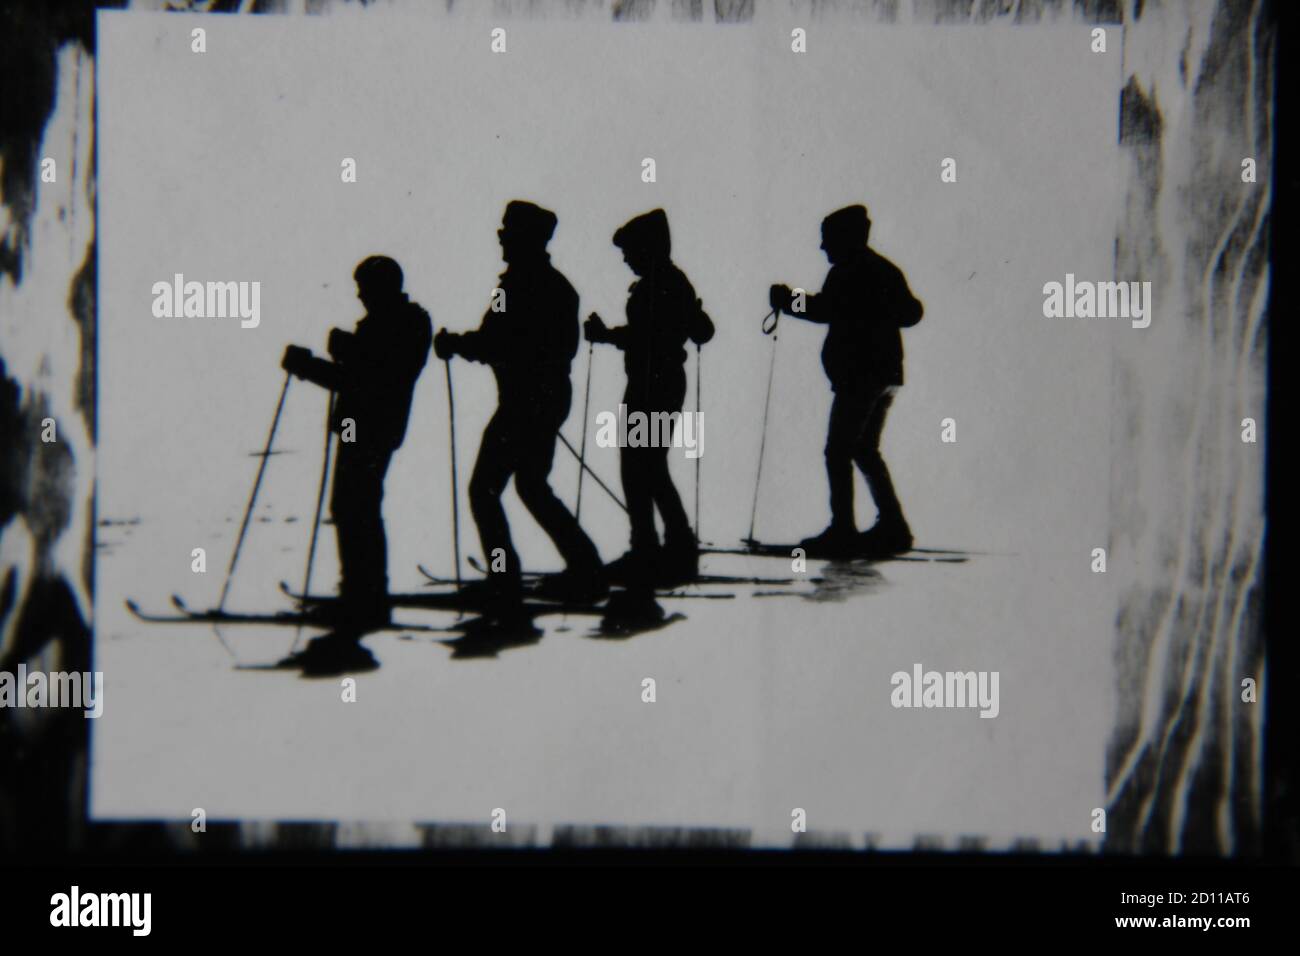 Feine Schwarz-Weiß-Profilfotografie der 70er Jahre von Skifahrern auf der Skipiste in ihren kompletten Ski-Outfits und Skiern, die den Hügel hinunter fahren. Stockfoto